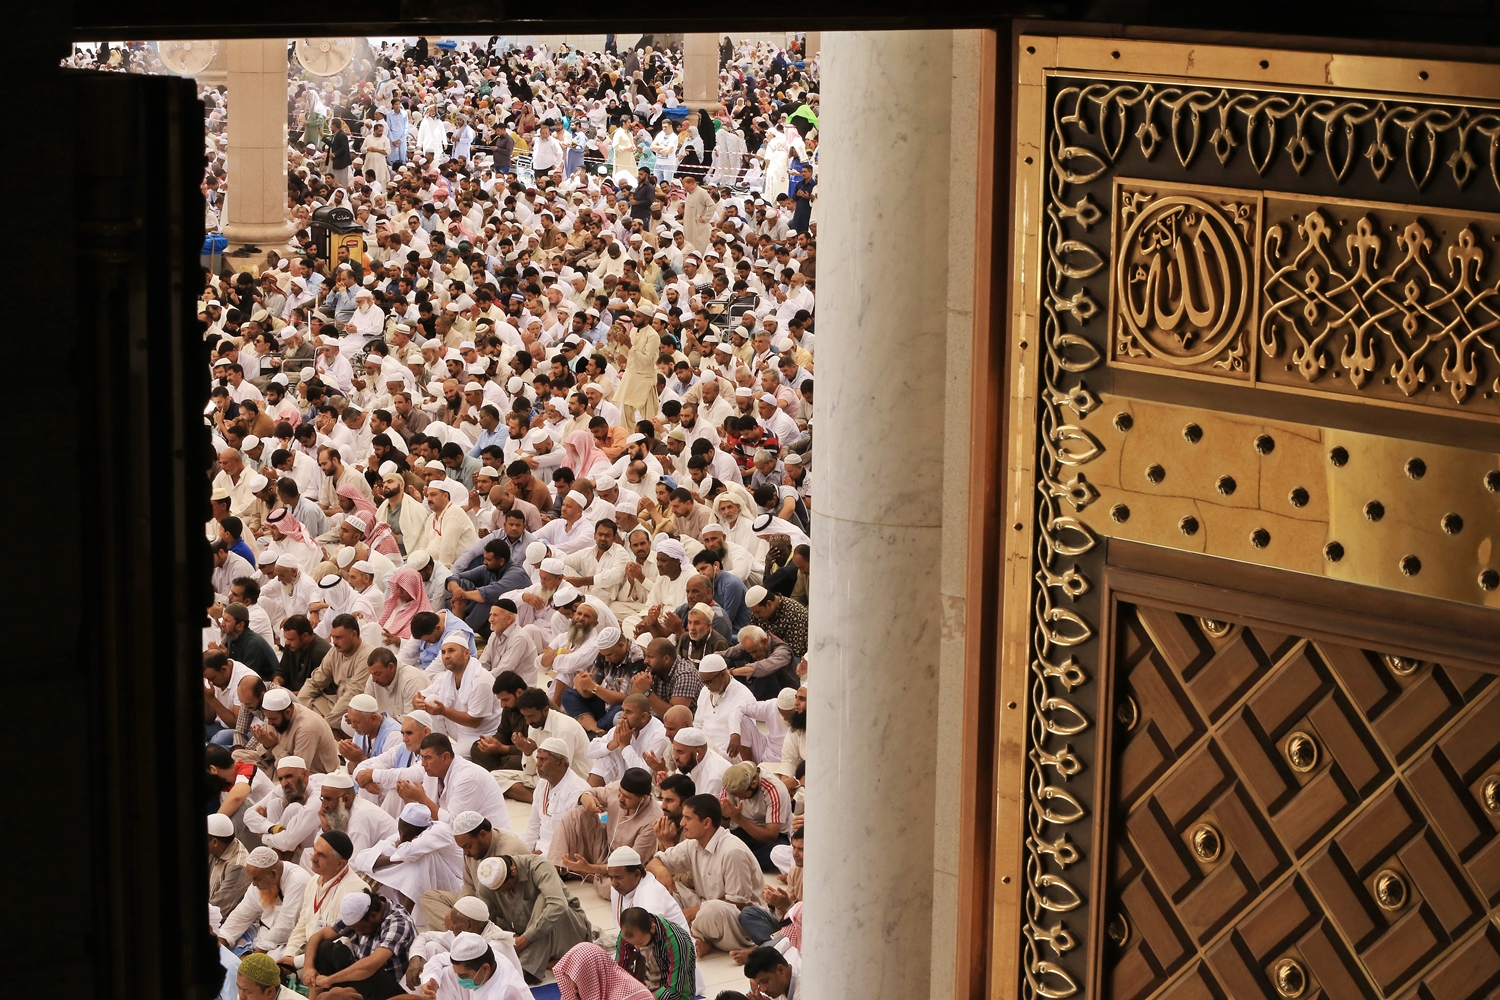 خطيب المسجد النبوي: على المسلم أن يحاسب نفسه على الأعمال ويجاهدها في الوساوس والخطرات على القلب